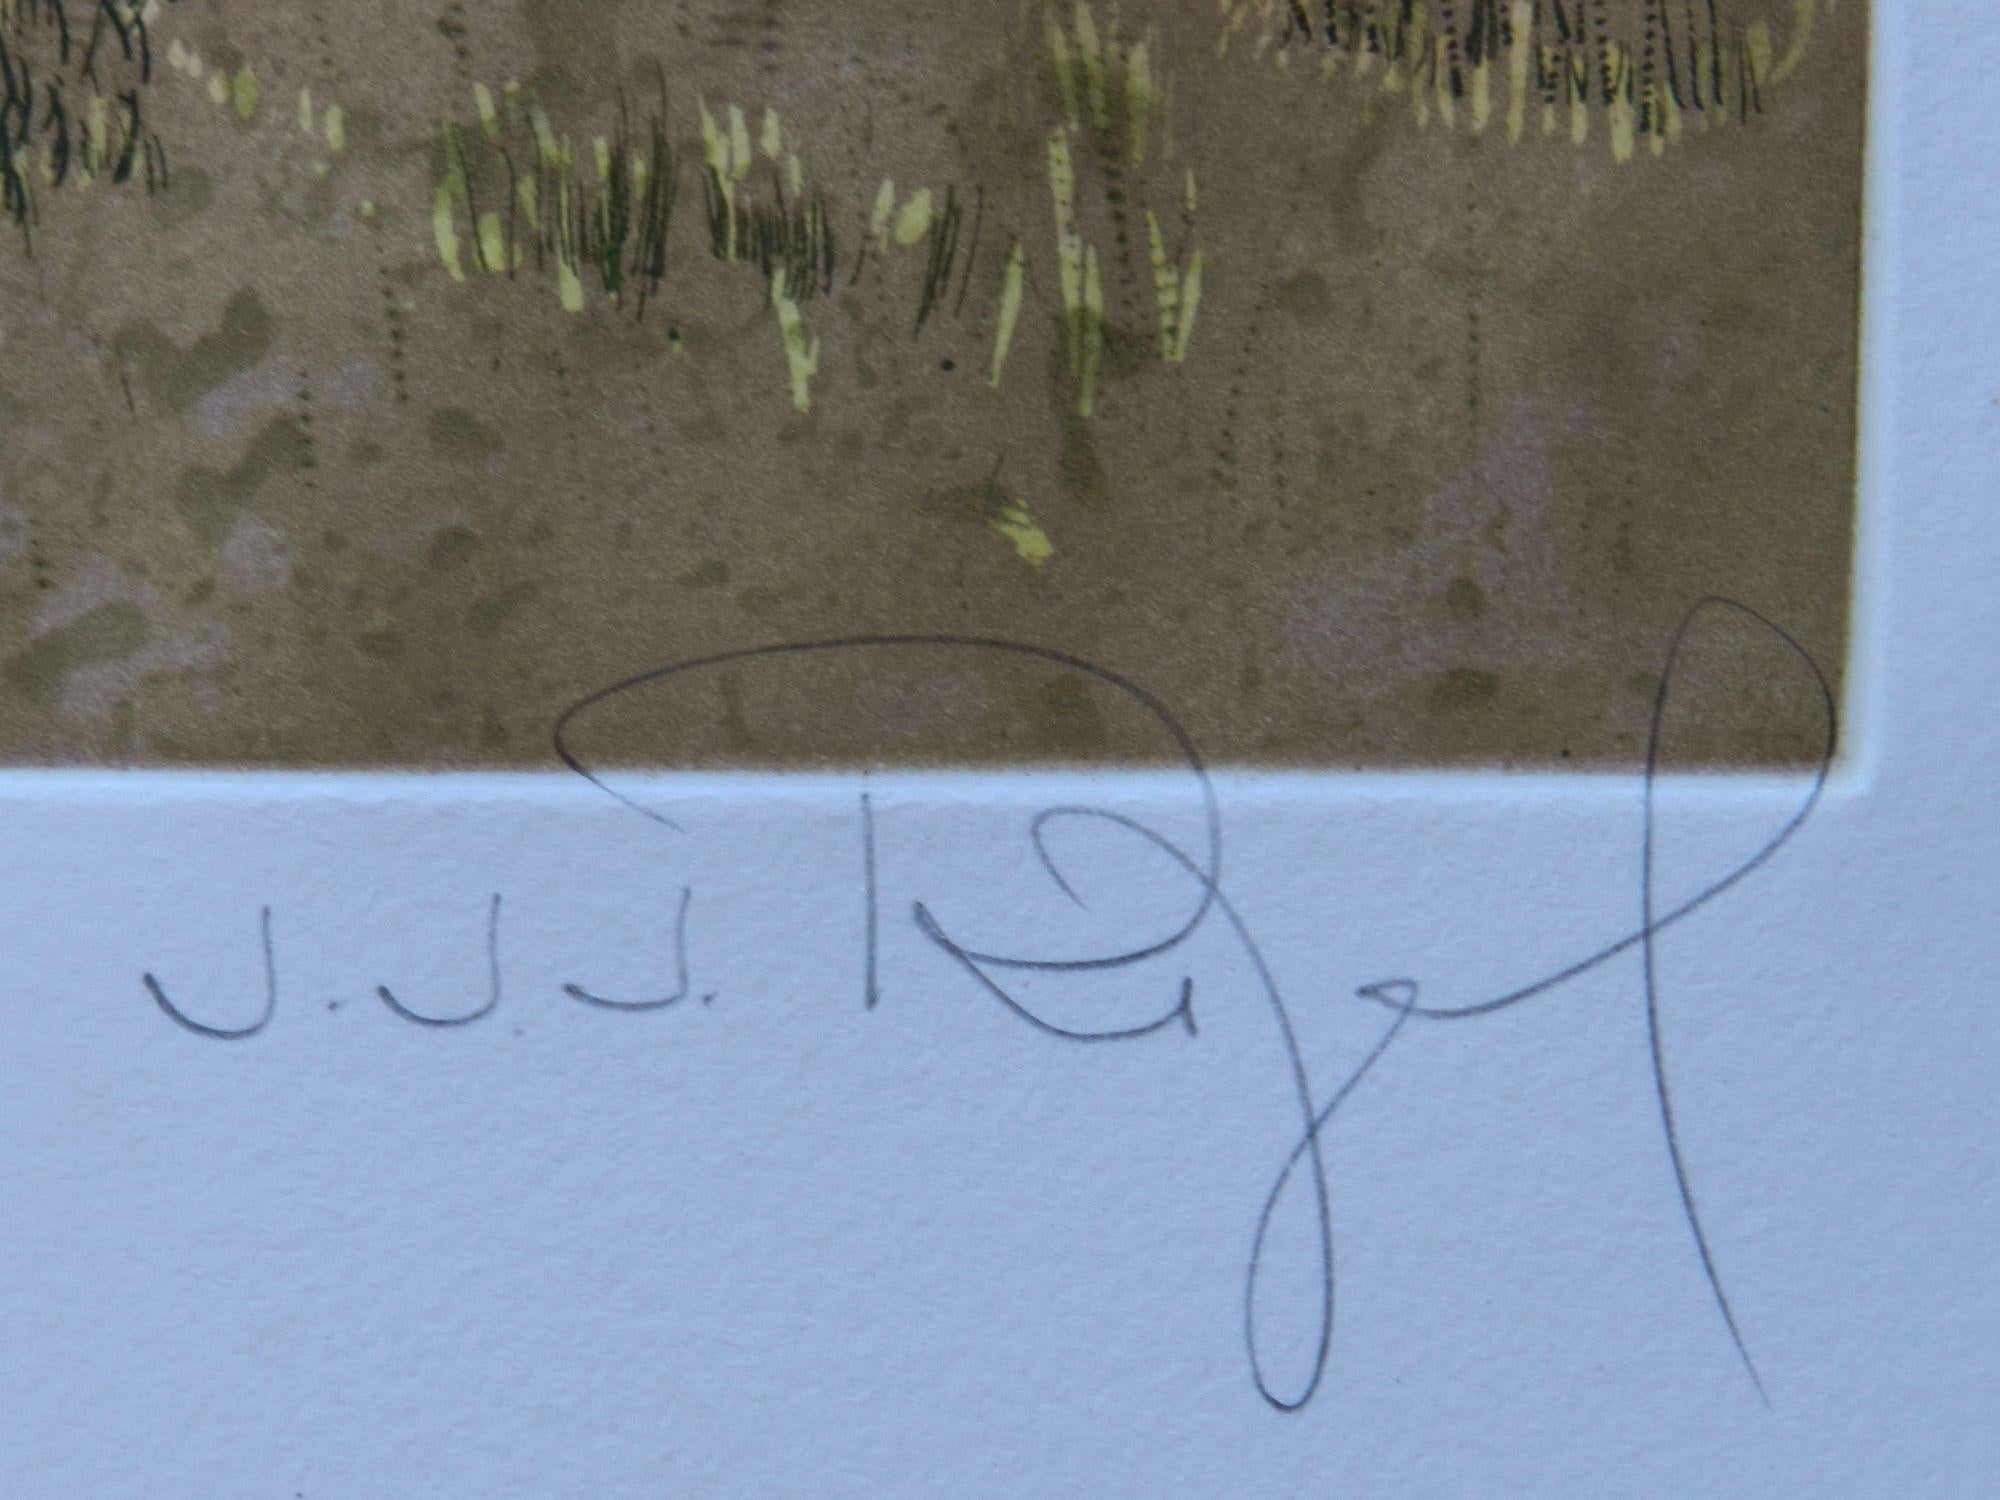 Lithographie de Jacques Joachim Jean Rigal 1926-1997 Français
Paysage d'Ile de France
Arbre numéroté 75/100  et signé par l'artiste
Les mesures de l'image sont indiquées ci-dessous
Le papier mesure 75 cm 29,5 cm de haut et 55 cm 21,65 cm de